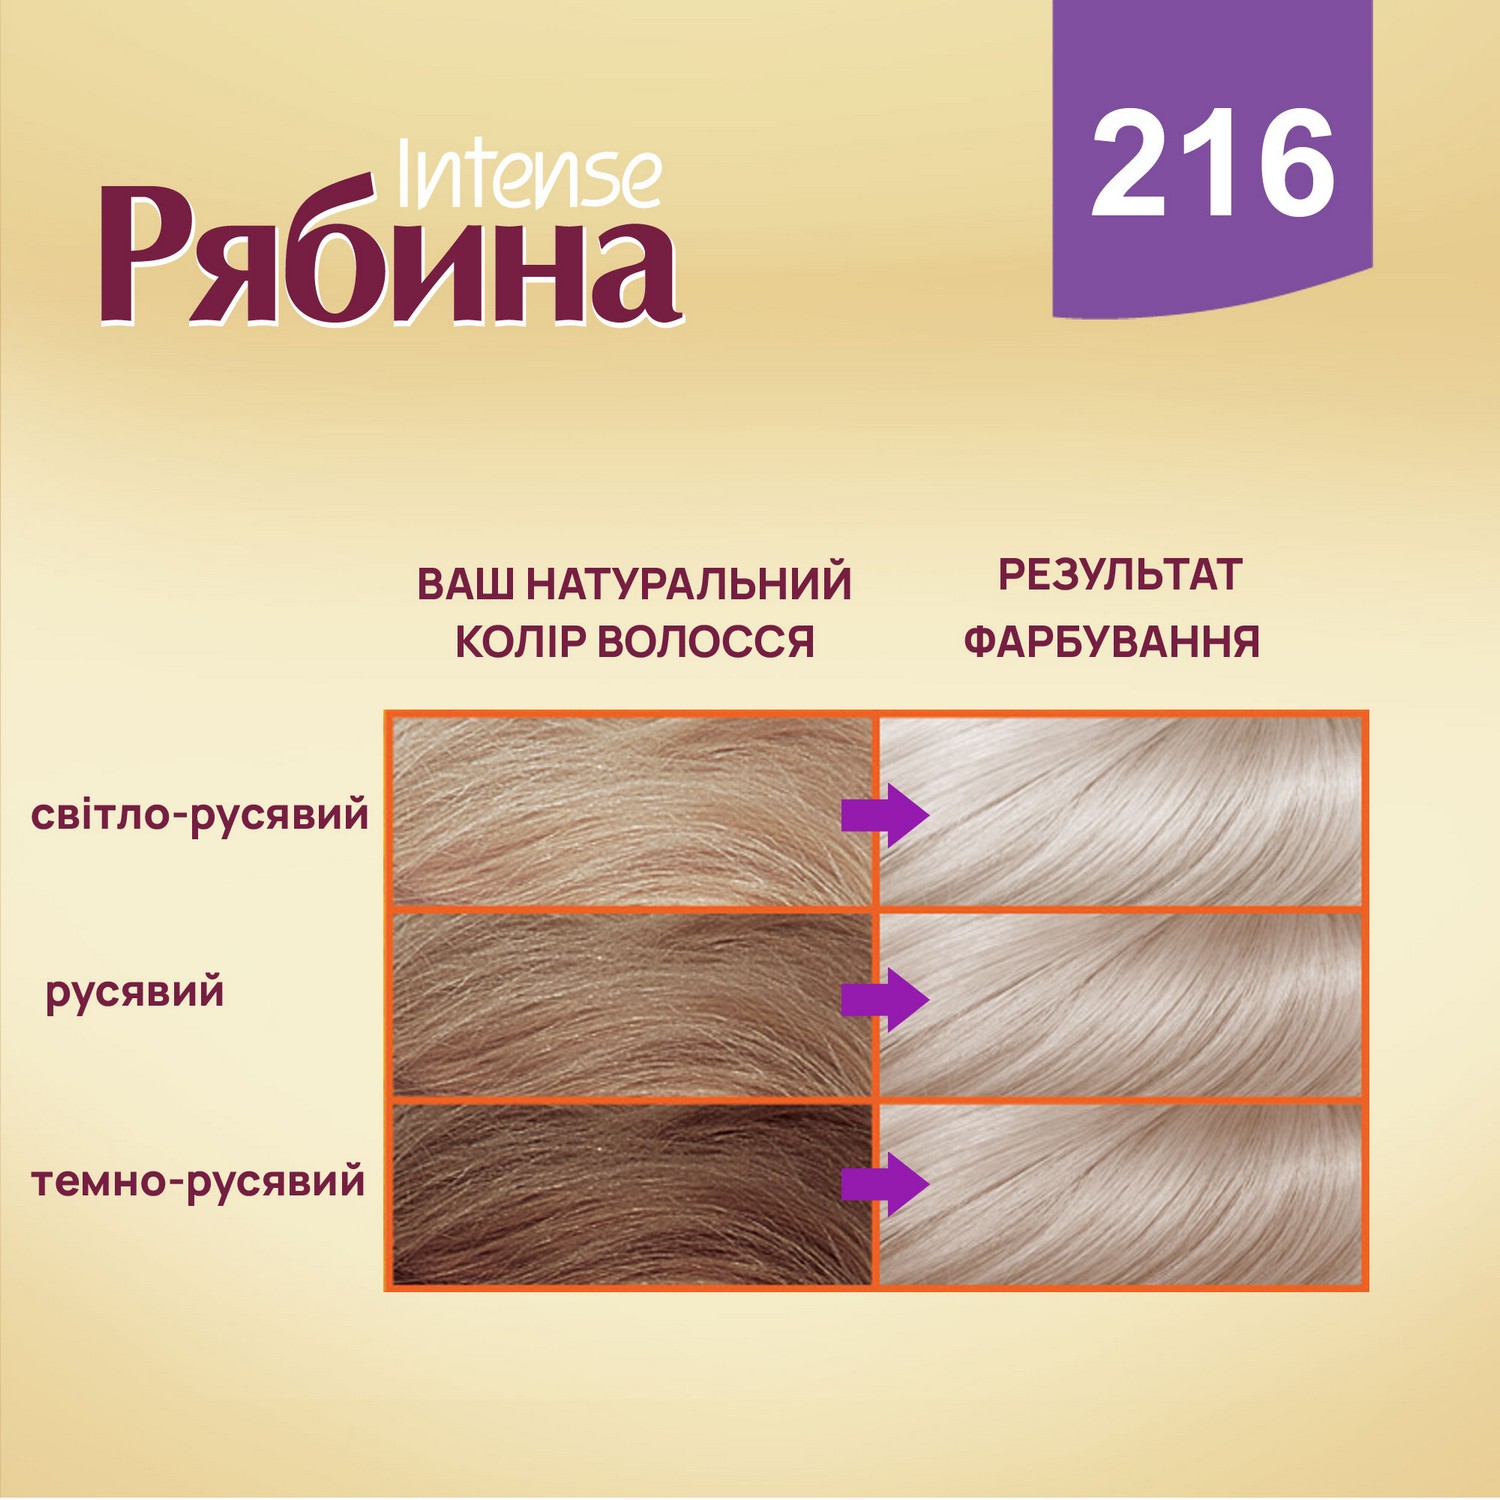 Крем-фарба для волосся Рябина Intense, відтінок 216 (Попелястий блонд),138 мл - фото 3